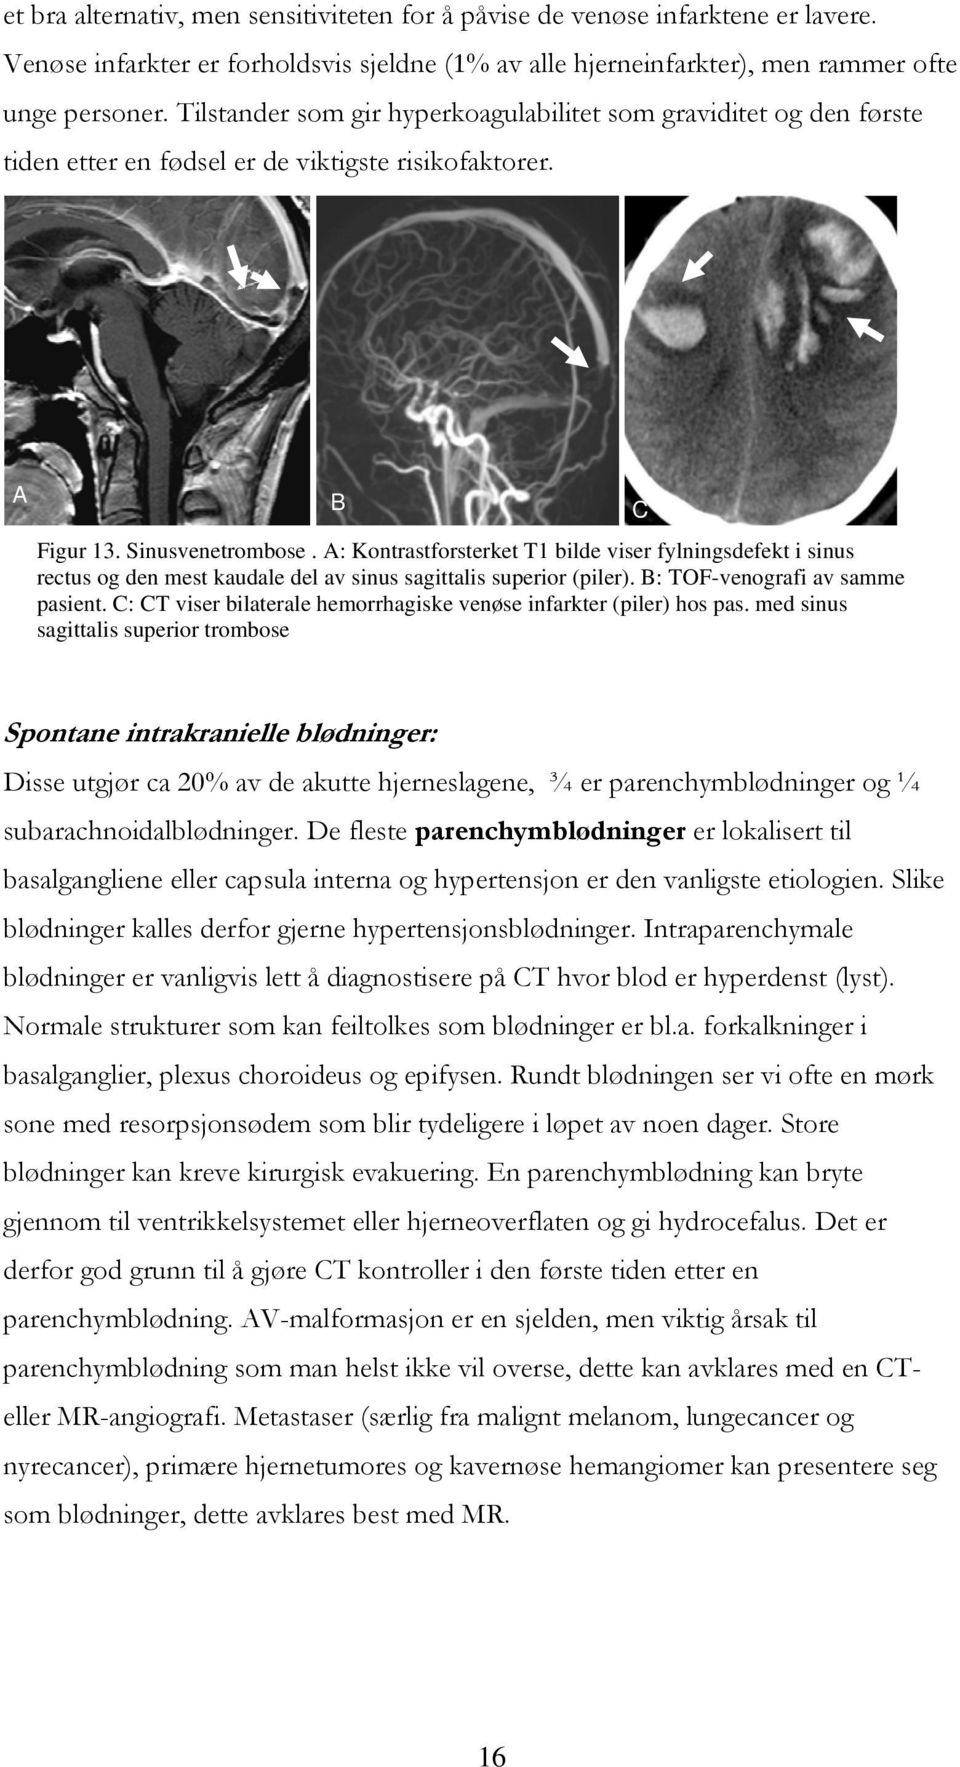 A: Kontrastforsterket T1 bilde viser fylningsdefekt i sinus rectus og den mest kaudale del av sinus sagittalis superior (piler). B: TOF-venografi av samme pasient.